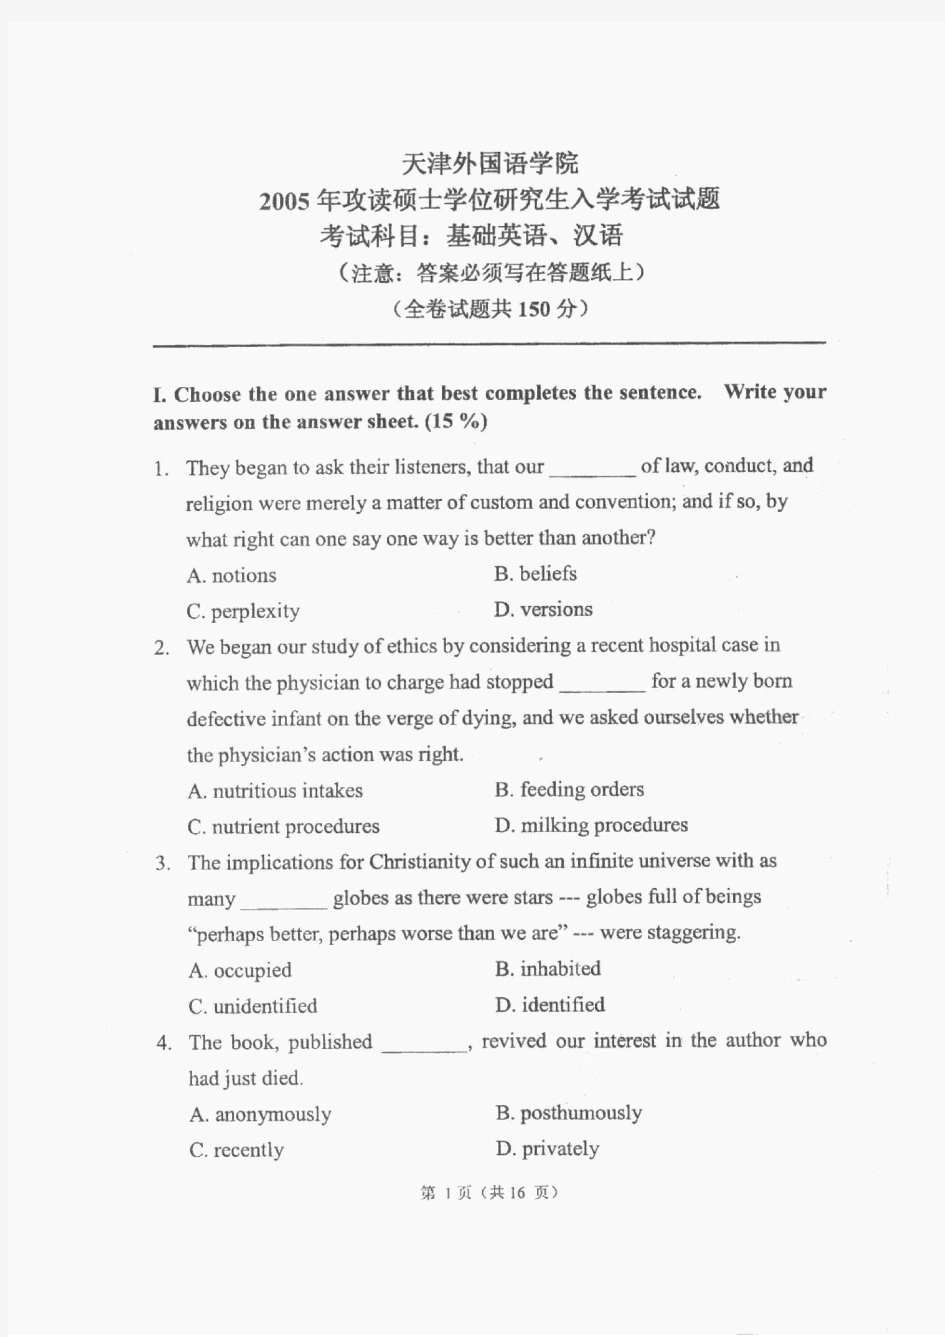 天津外国语大学英语考研真题 基础英语、汉语2005